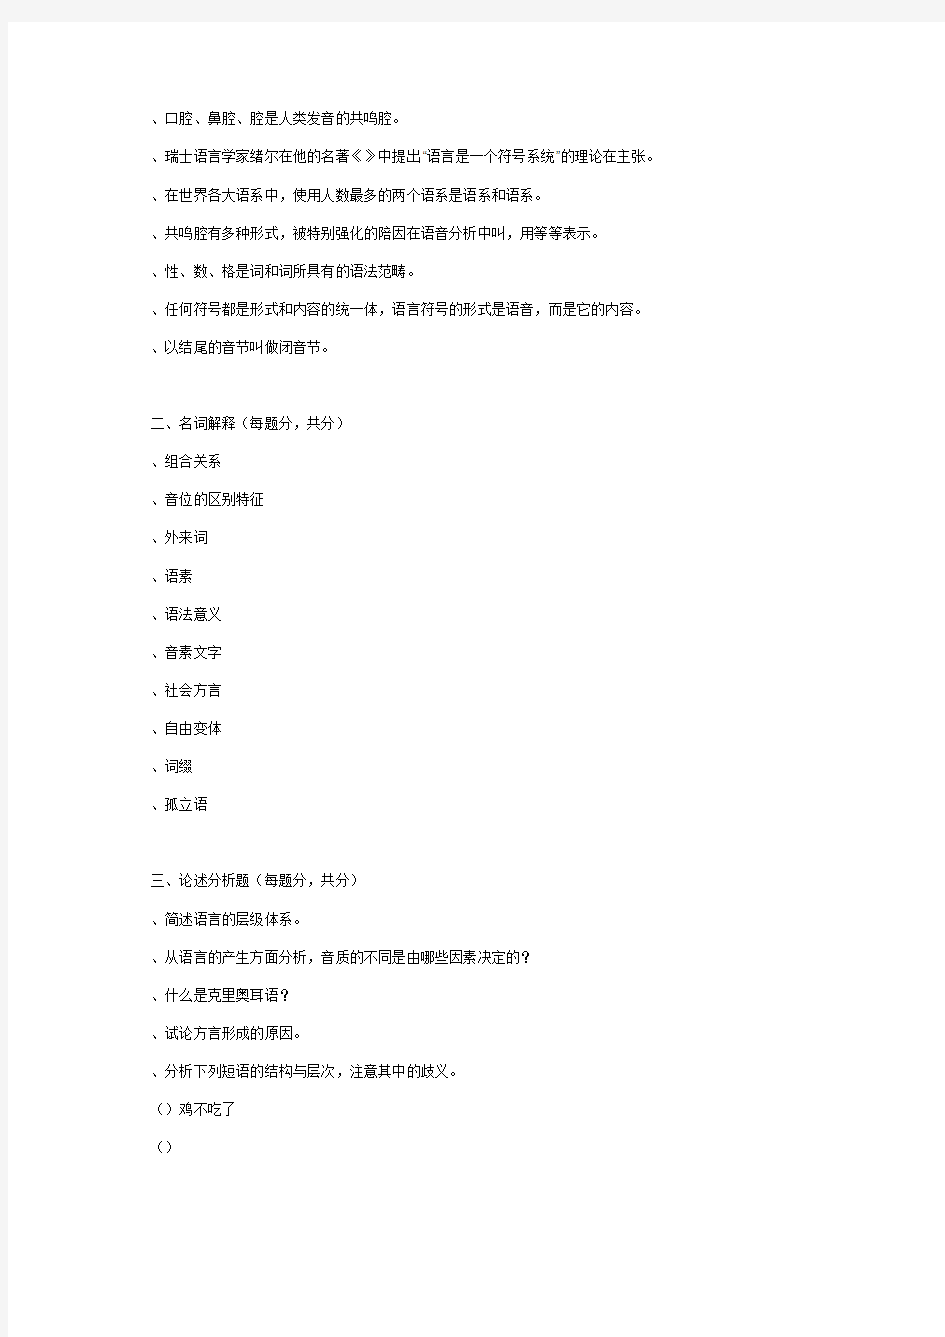 华中师范大学汉语言文字学试题集及2001到2003年语言类考研初试真题